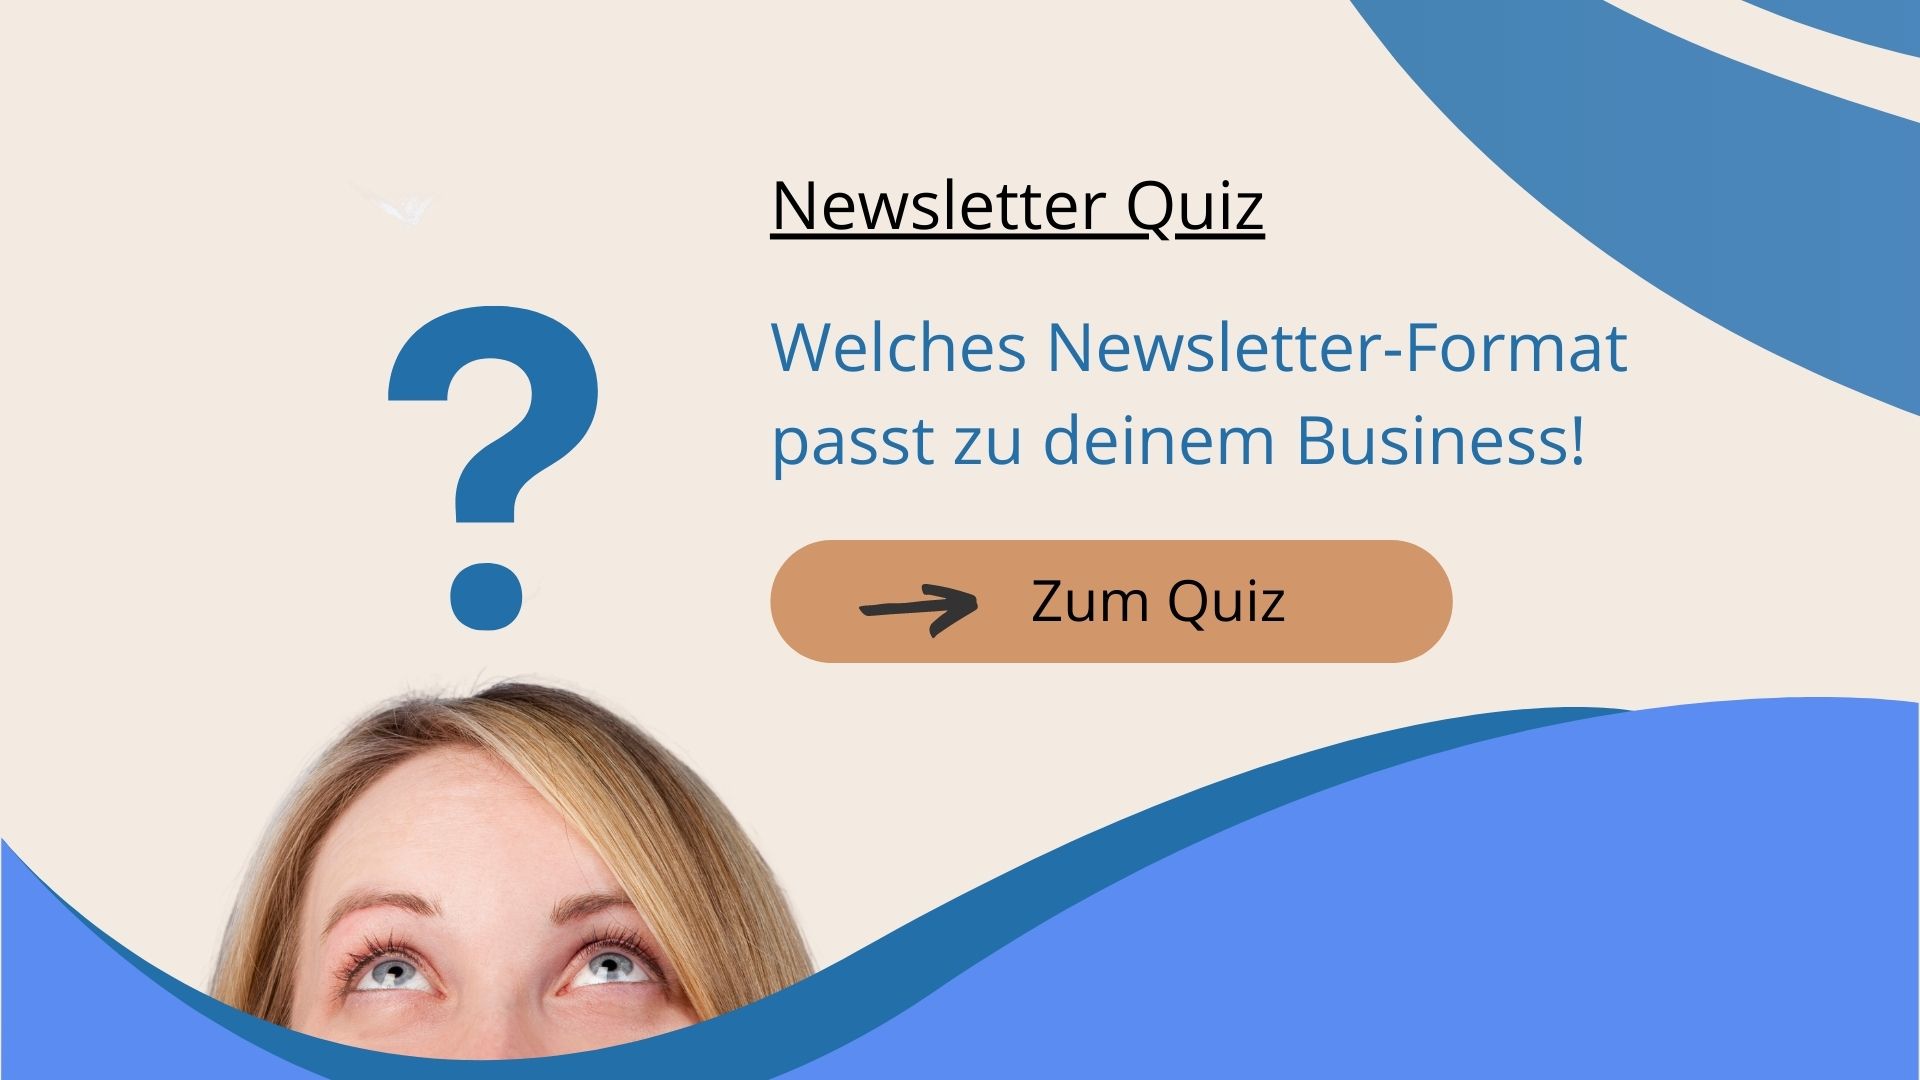 Newsletter Quiz: Welches Newsletter Format passt zu deinem Business?